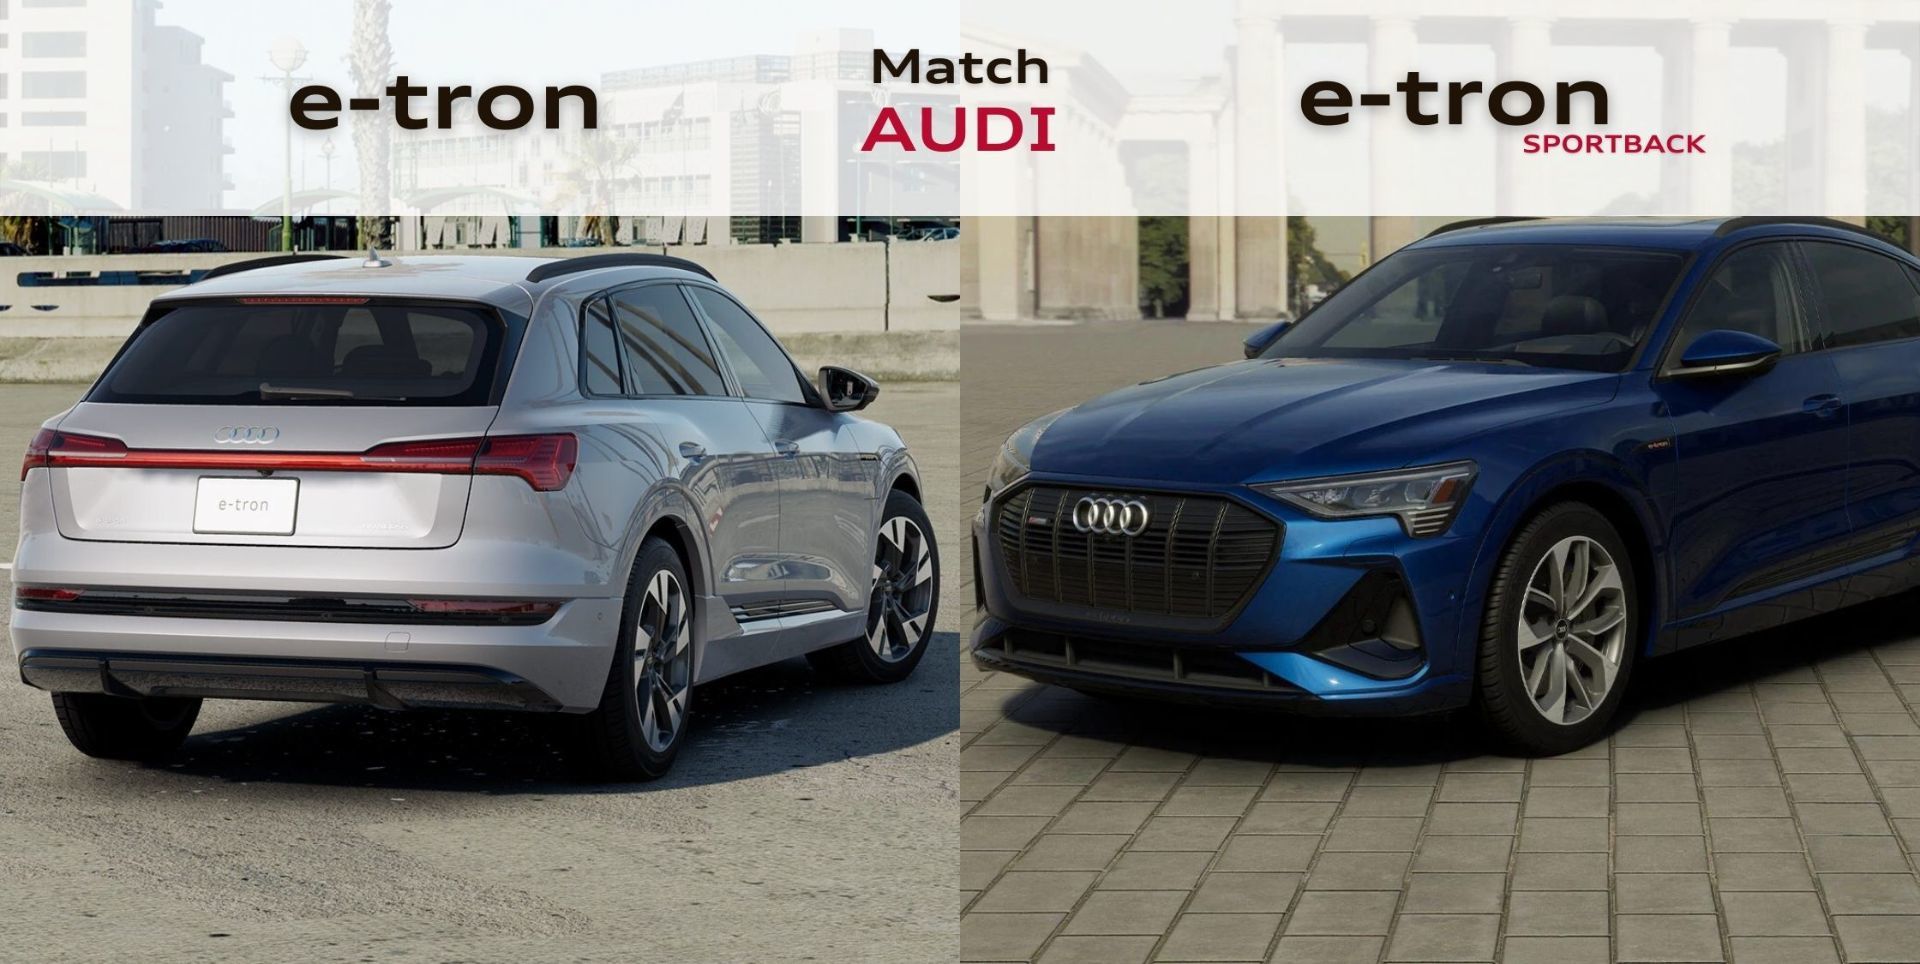 Audi E-tron 2022 VS Audi E-tron Sportback 2022 : lequel choisir selon votre rythme de vie?